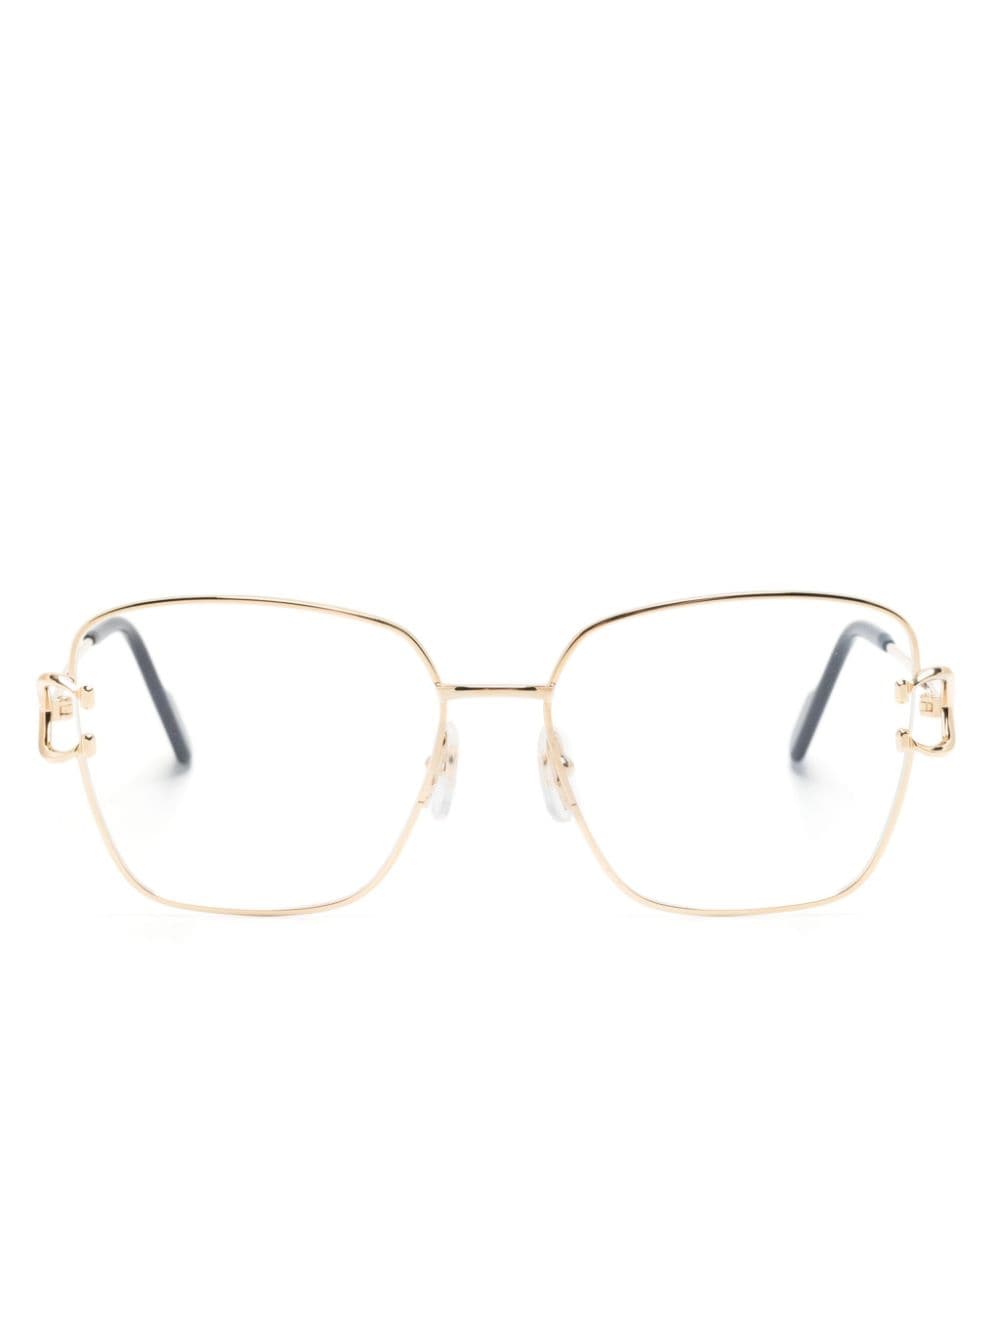 Cartier Eyewear Brille mit eckigem Gestell - Gold von Cartier Eyewear